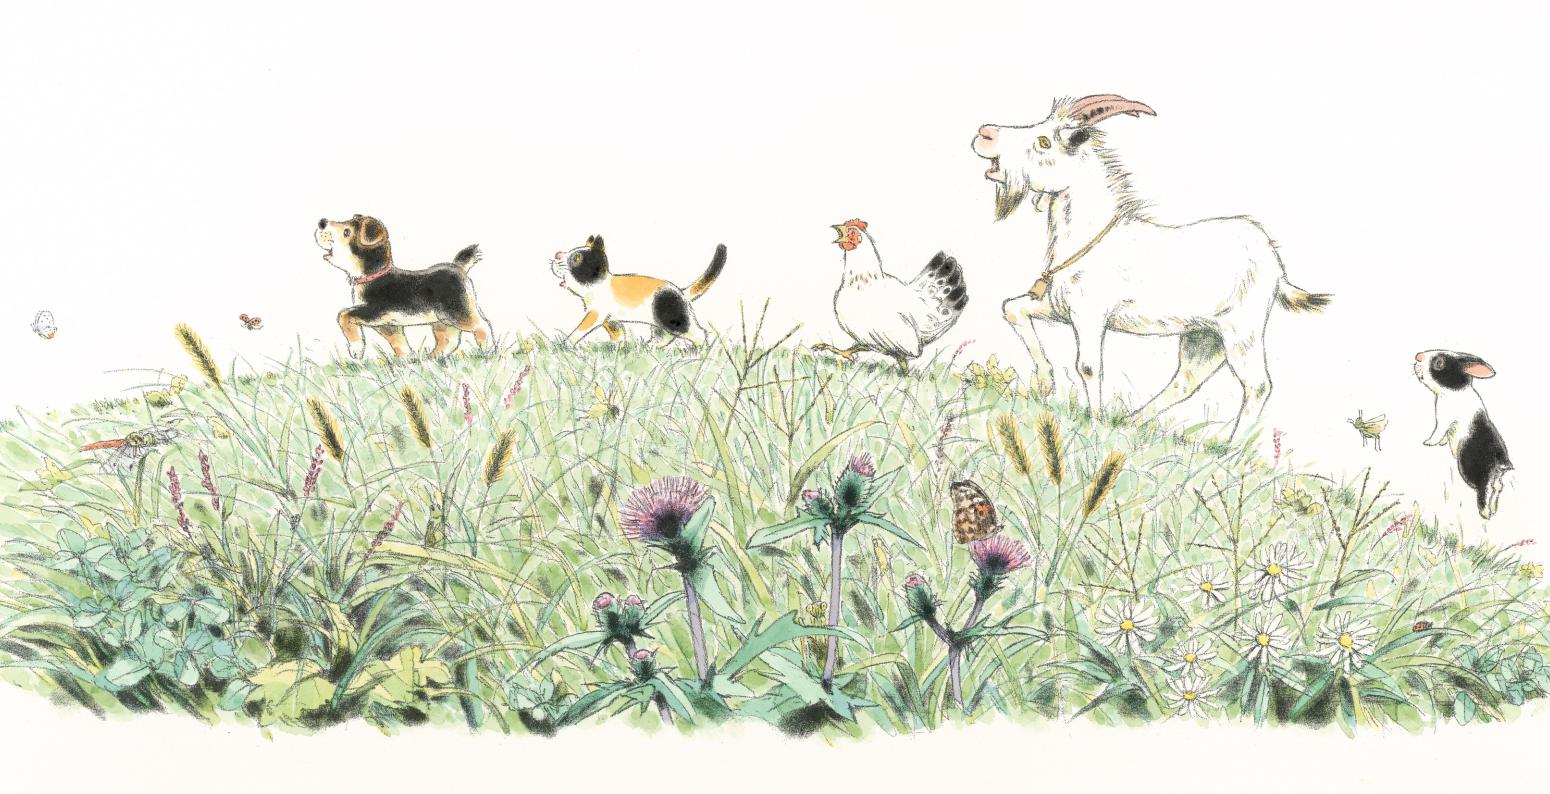 Animals walk across a mound of grass.